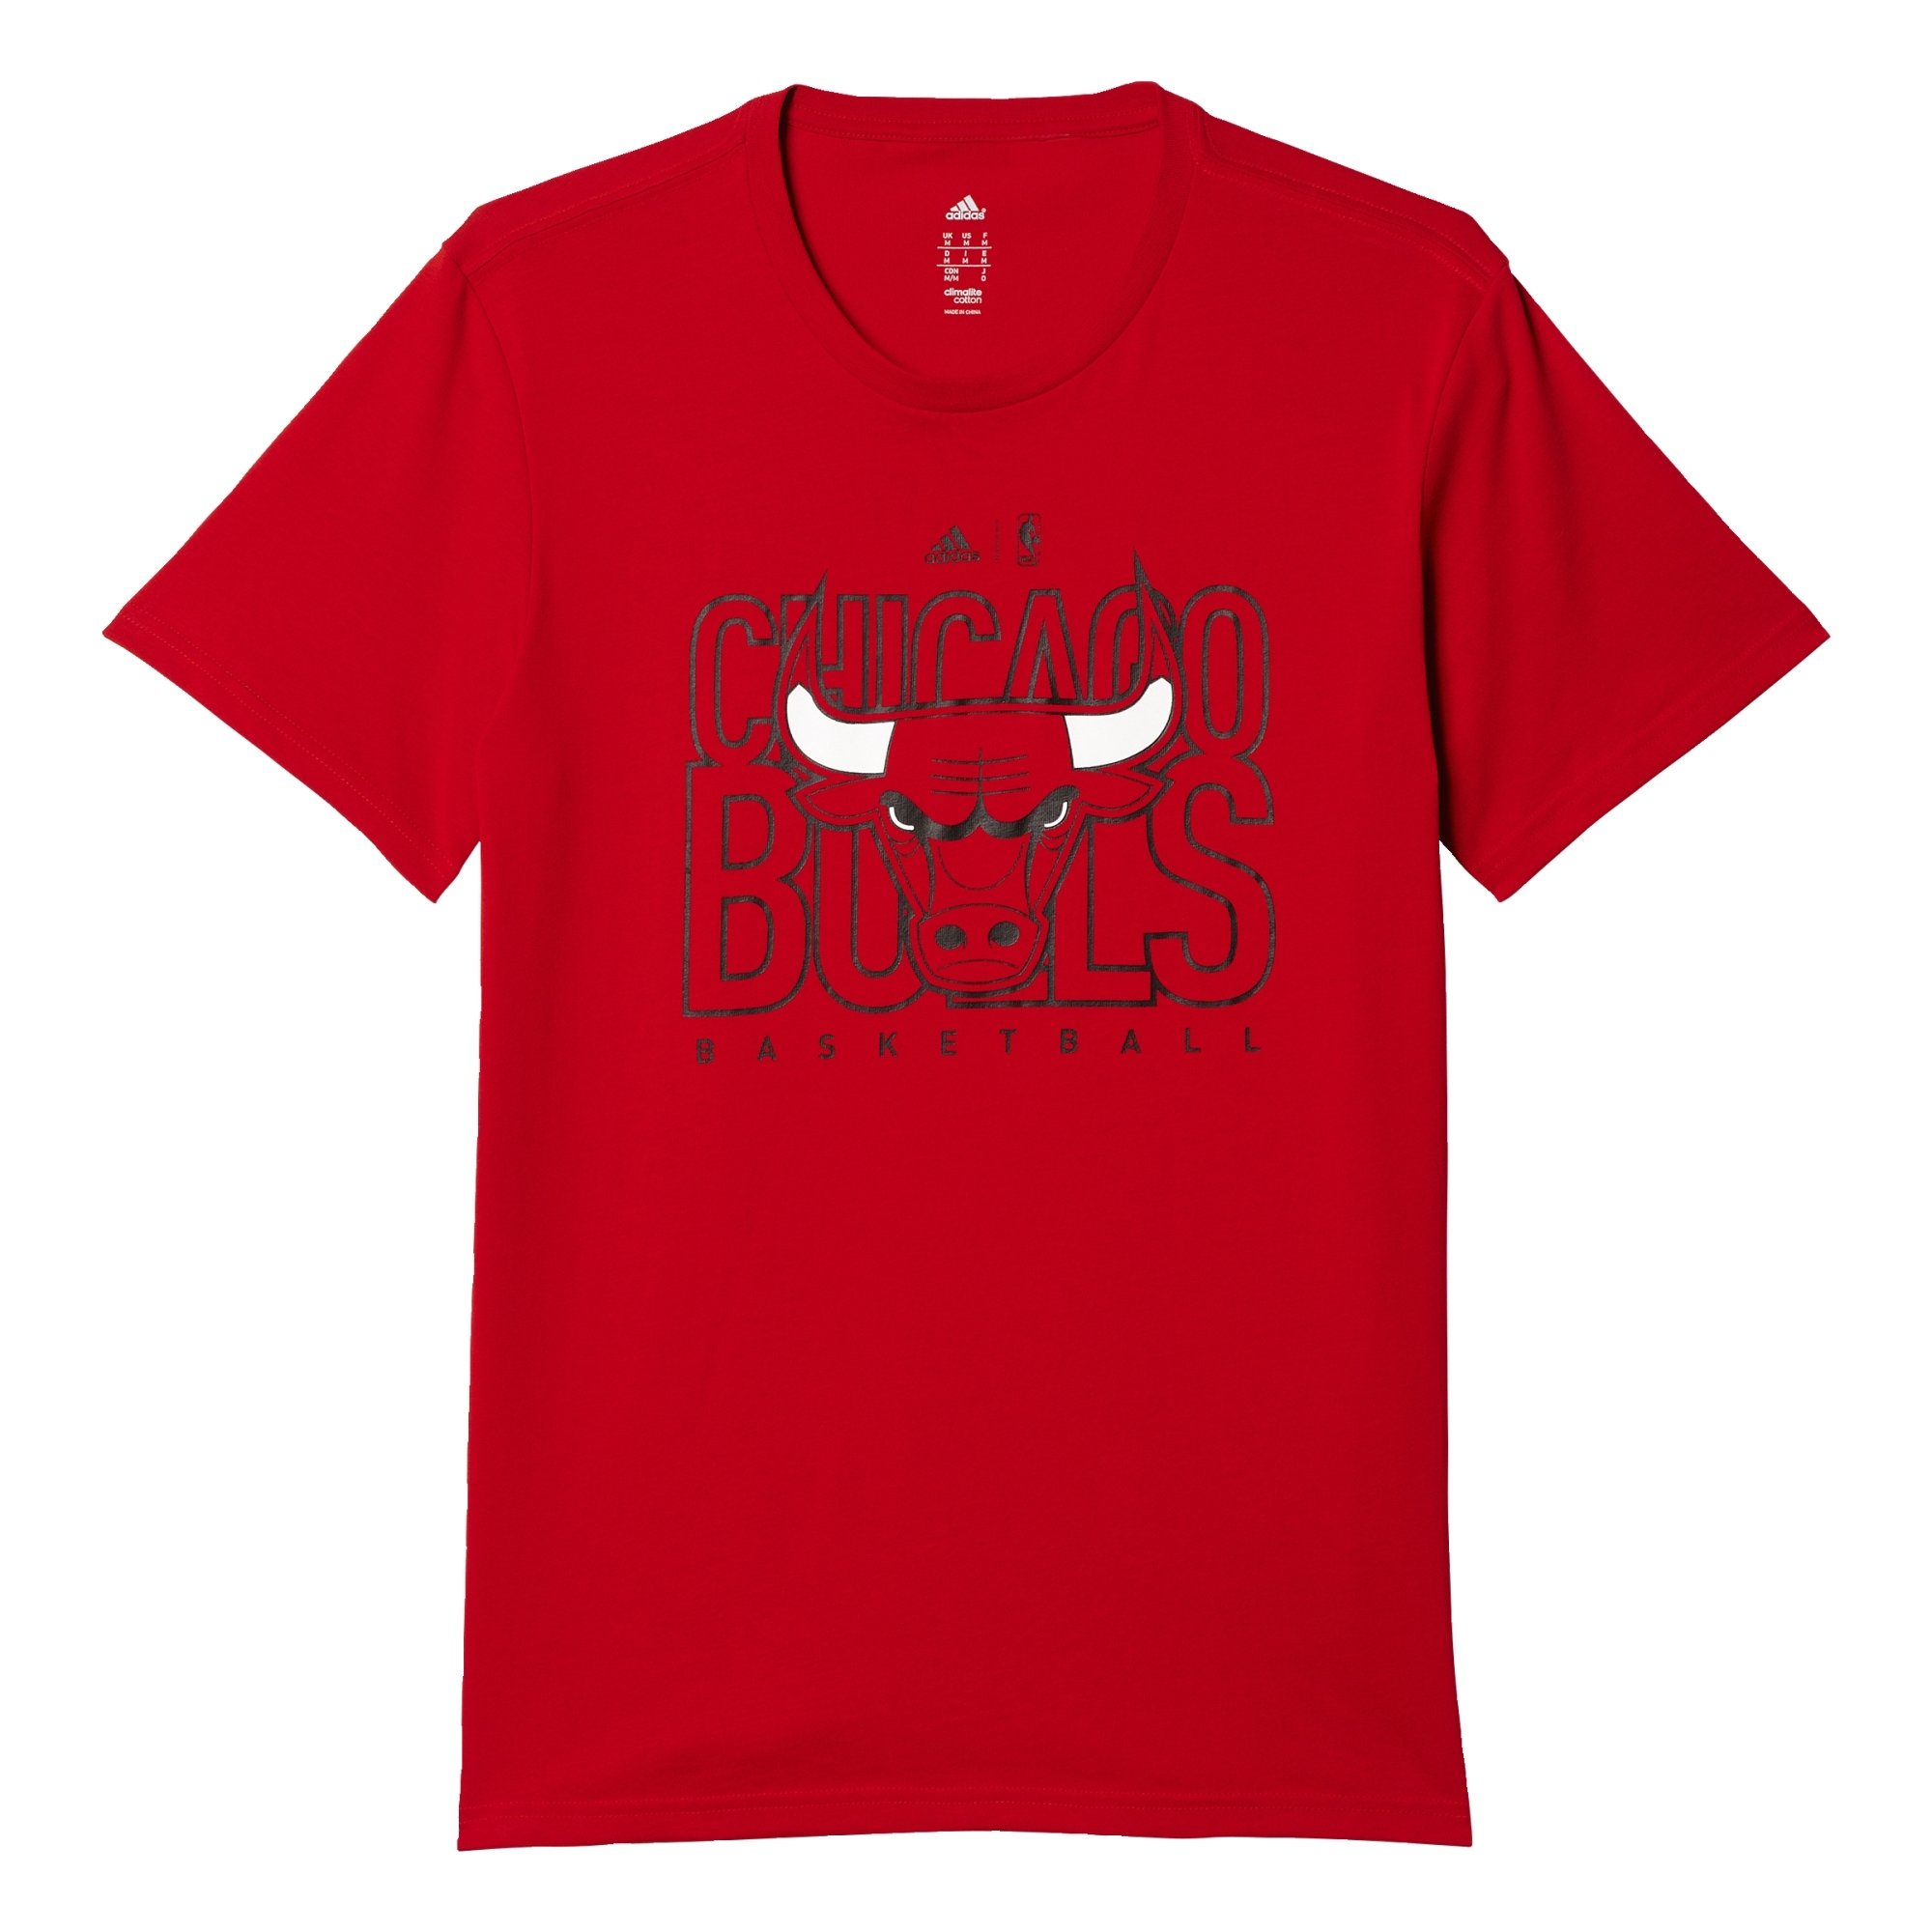 Camiseta 3 Bulls (nba-cbu)